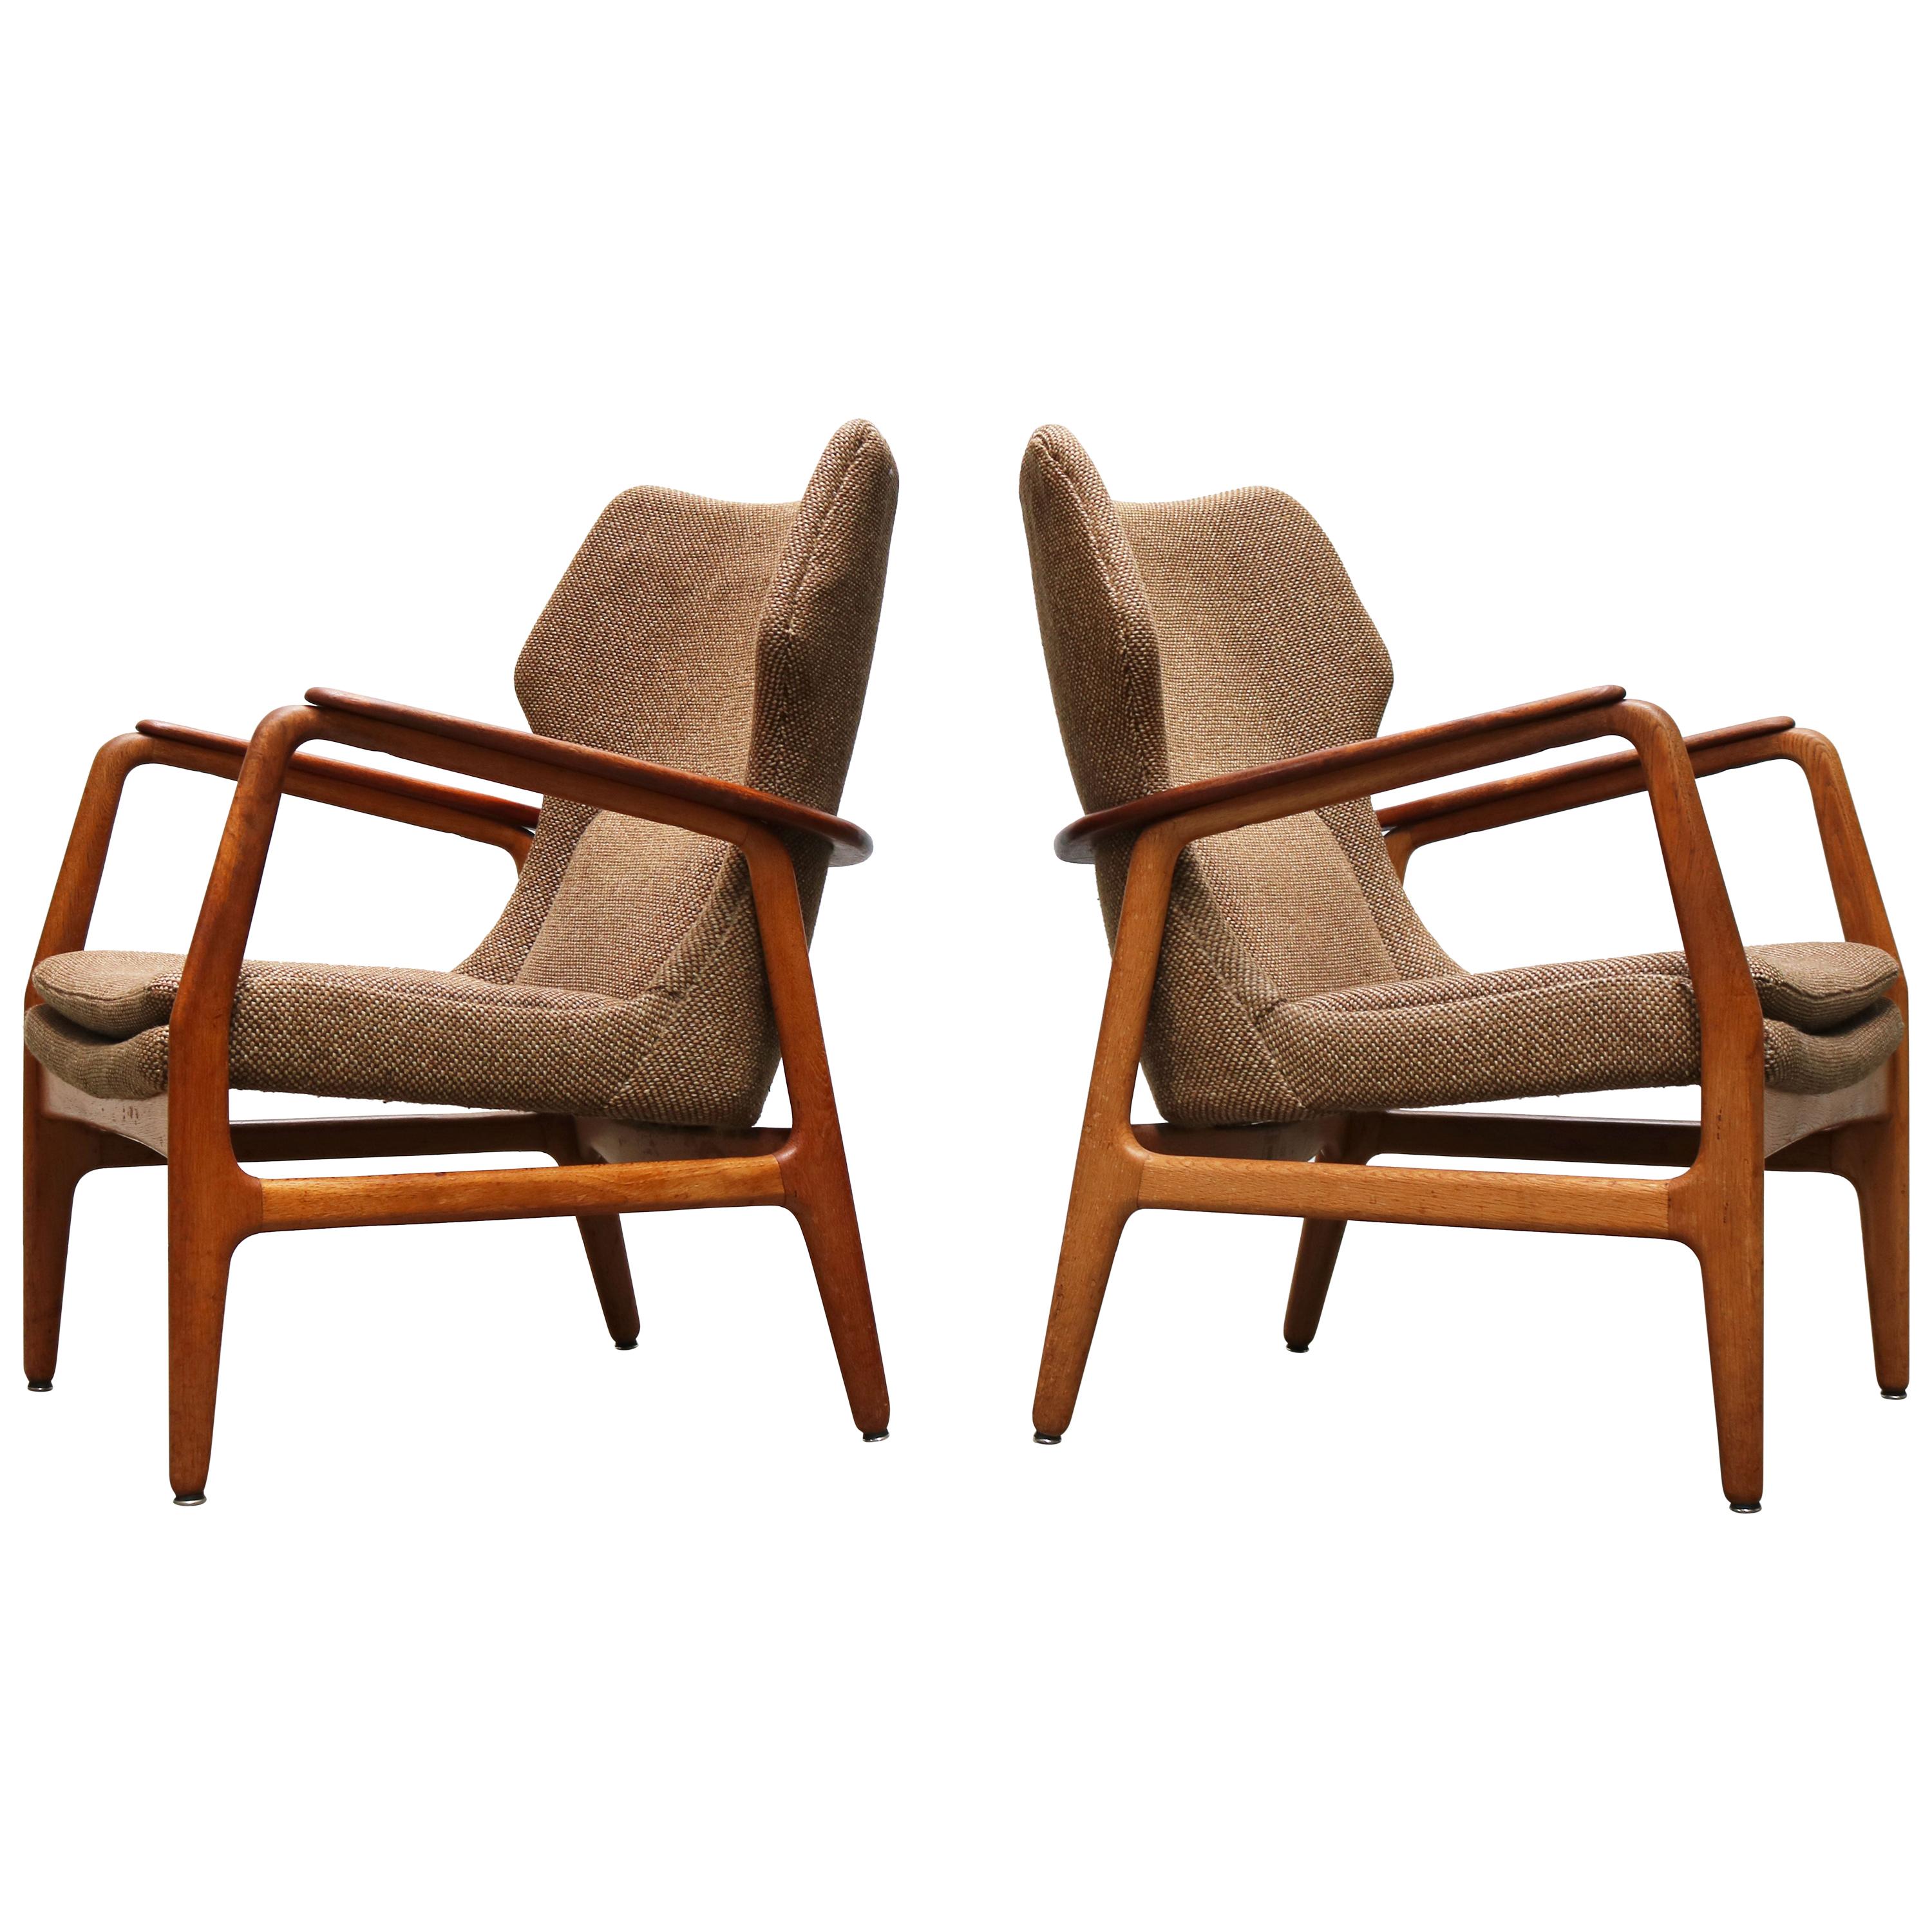 Pair of Danish Lounge Chairs by Aksel Bender Madsen 1952 Bovenkamp Teak Brown